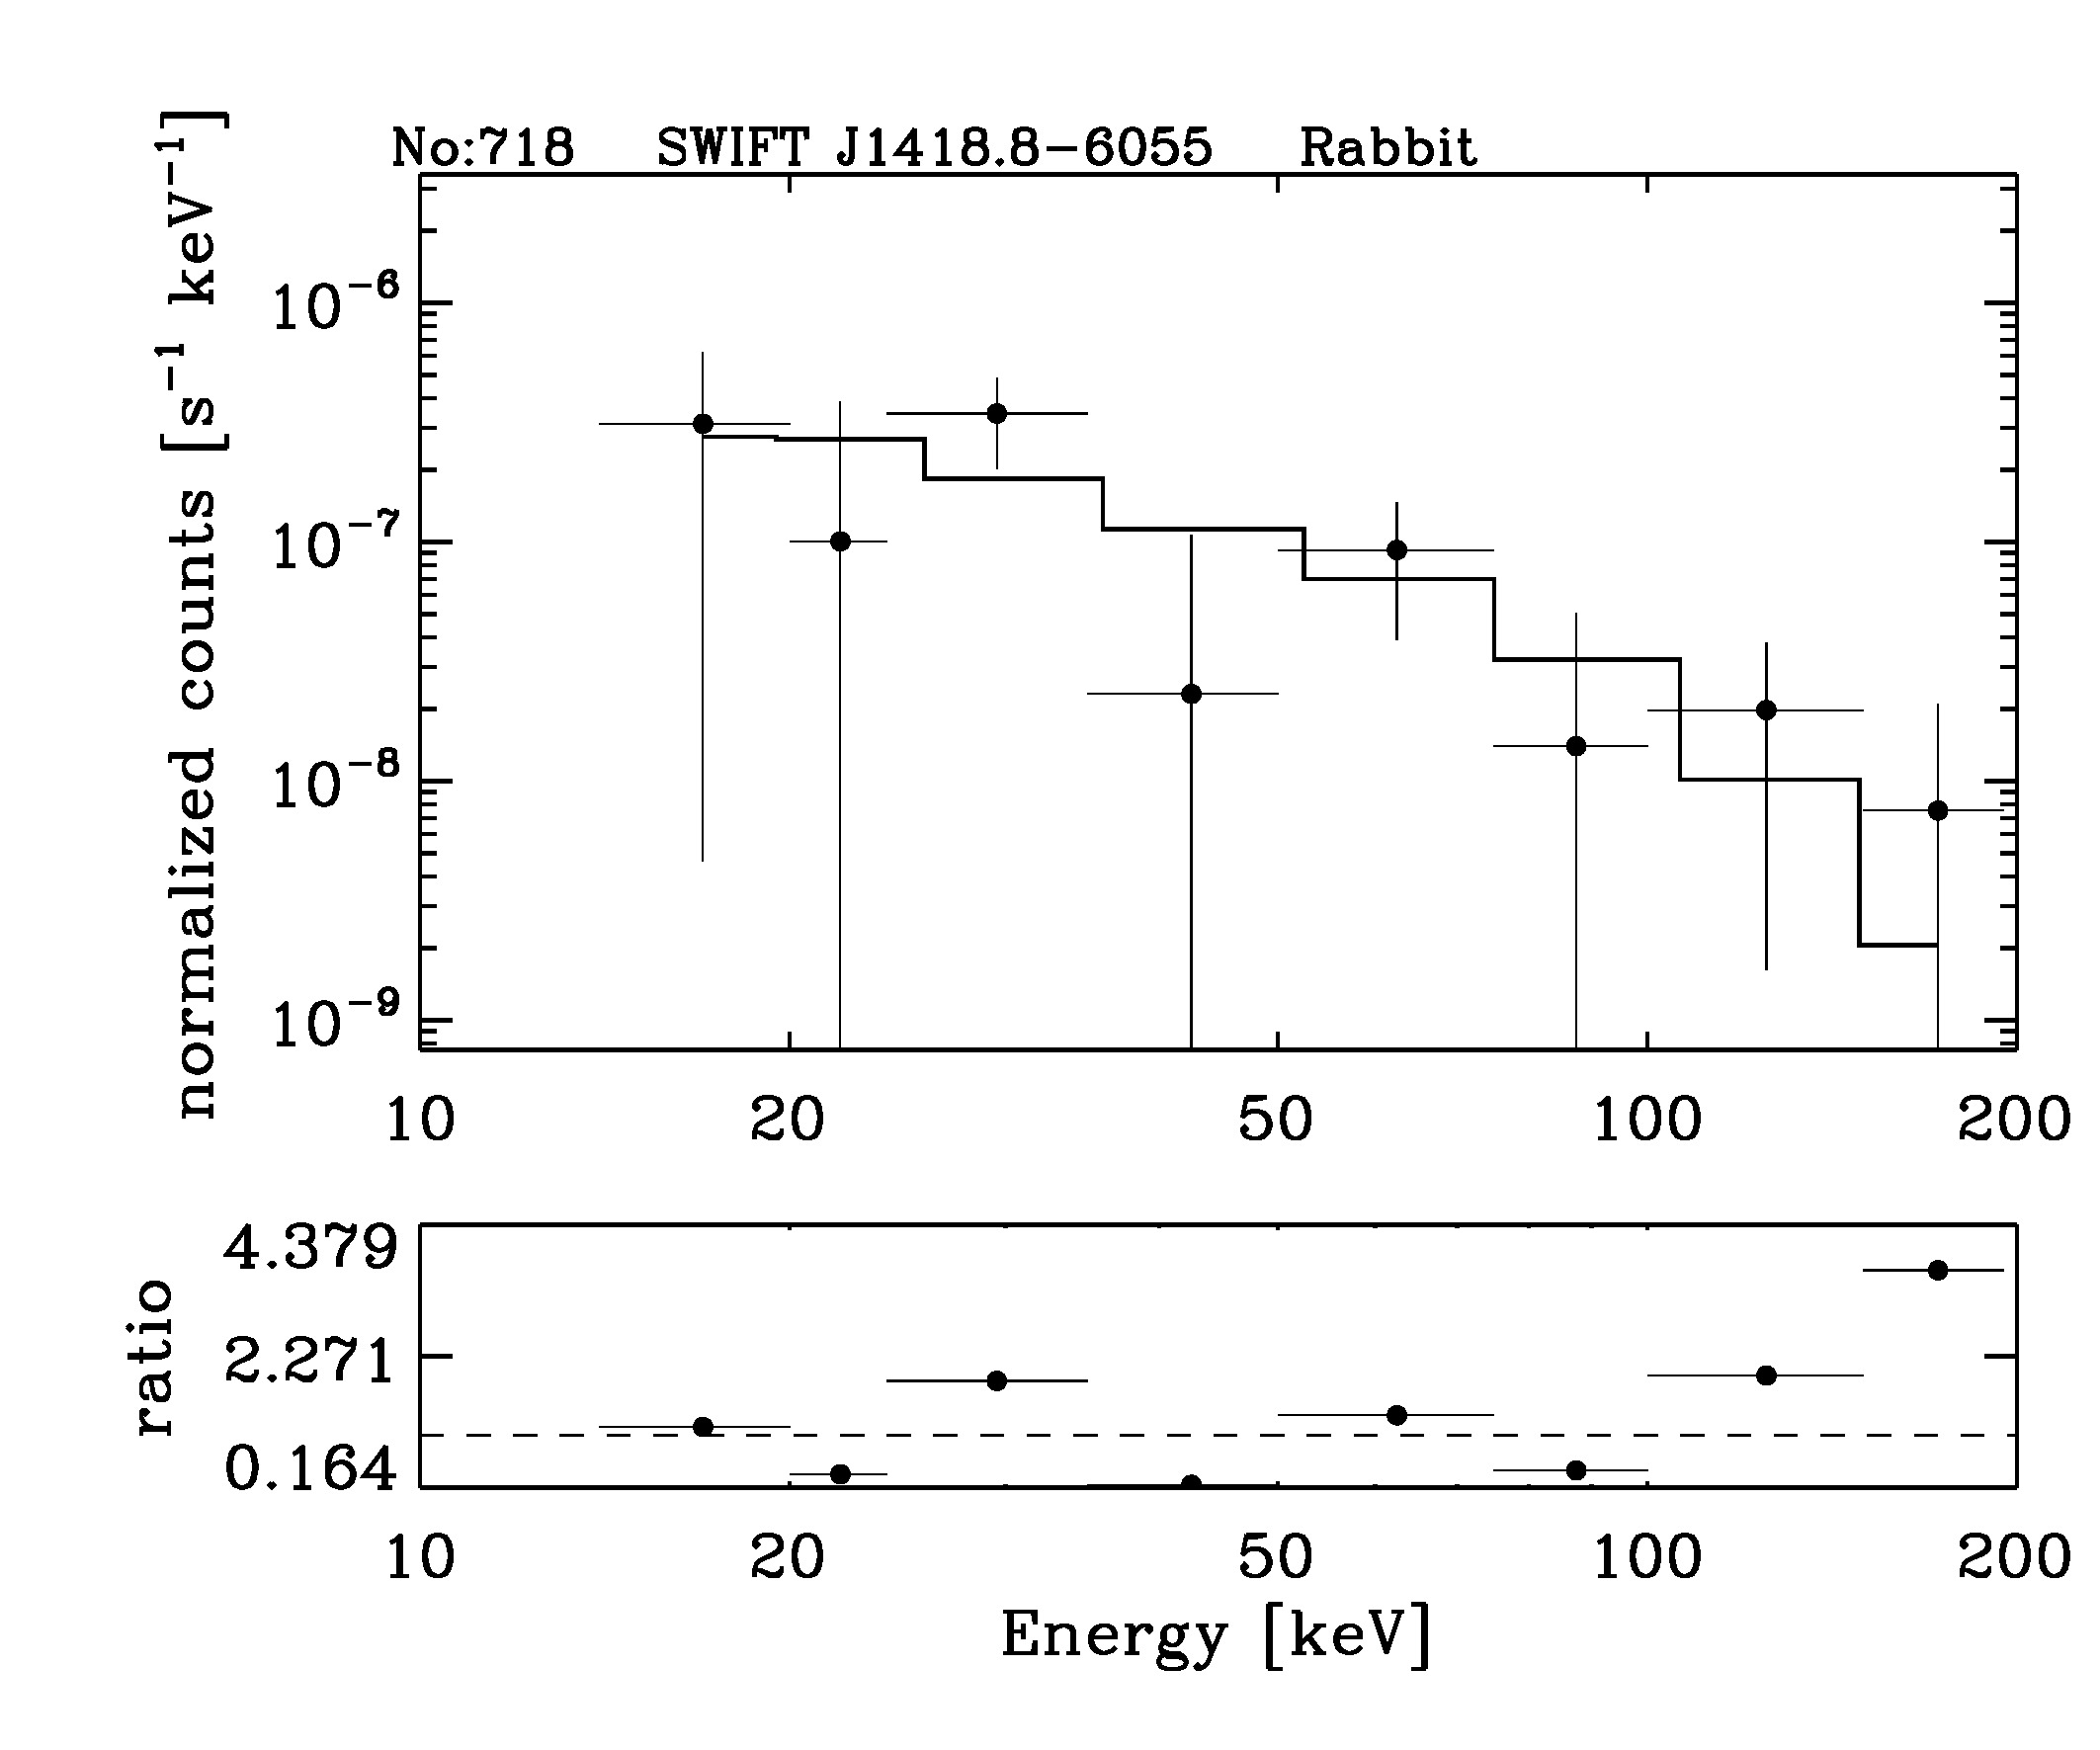 BAT Spectrum for SWIFT J1418.8-6055